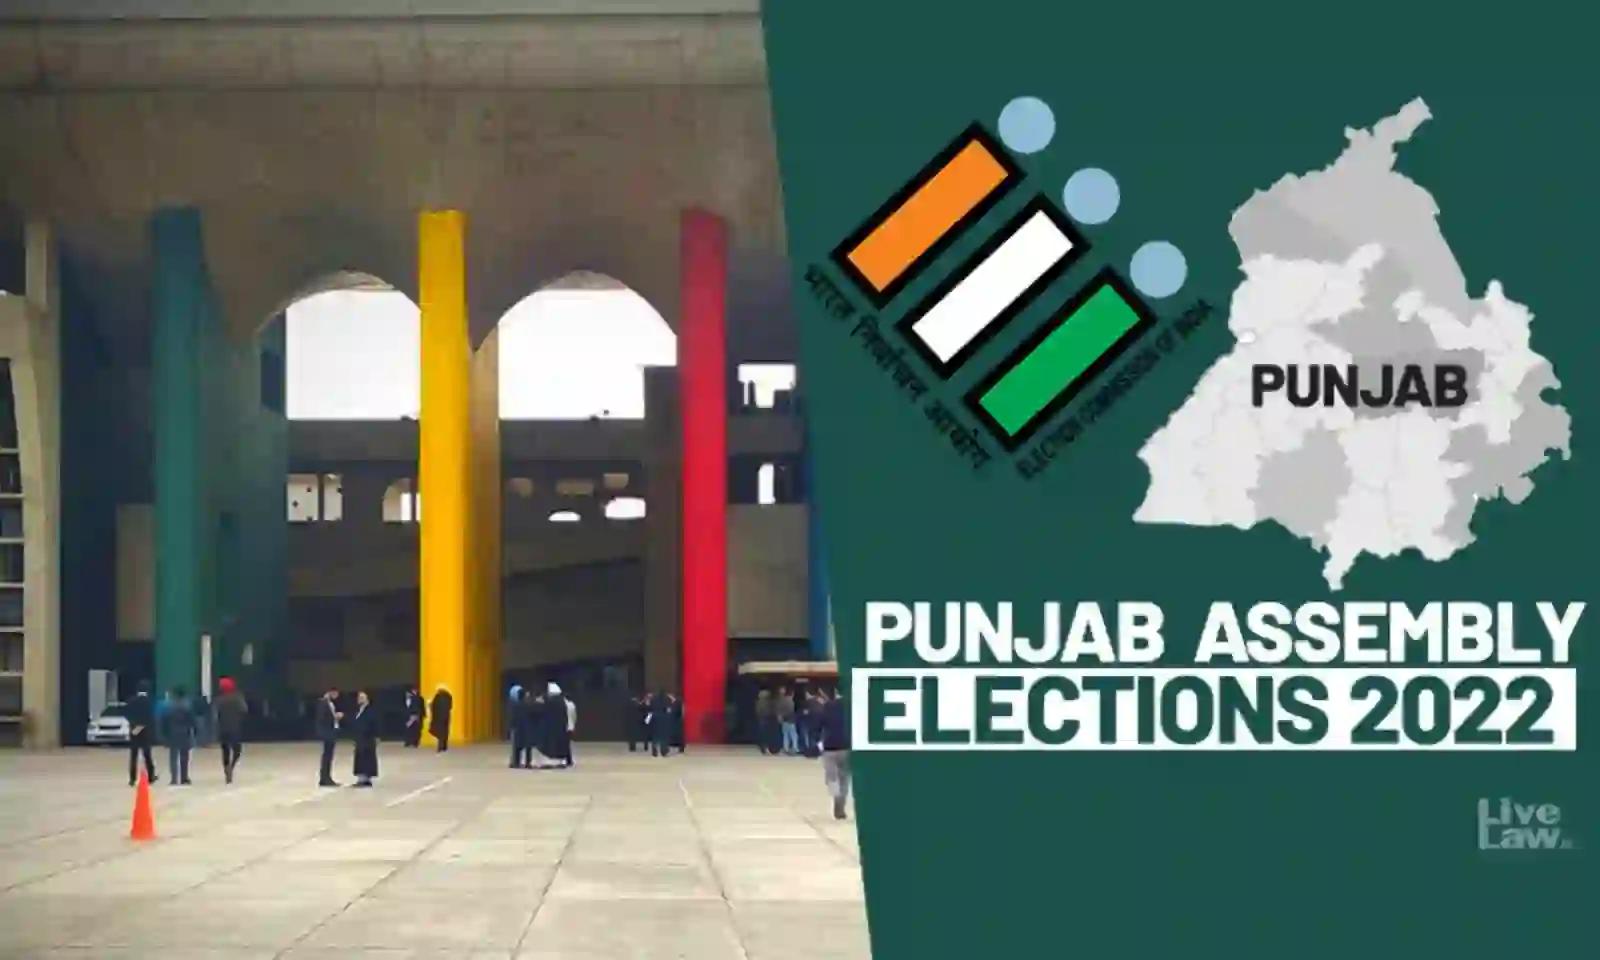 Punjab Election 2022 of Punjab Election 2022 : आप के मुख्यमंत्री उम्मीदवार होंगे भगवंत मान; बीकॉम की पढ़ाई बीच में छोड़ी, सांसद बनने बाद घट गई संपत्ति.